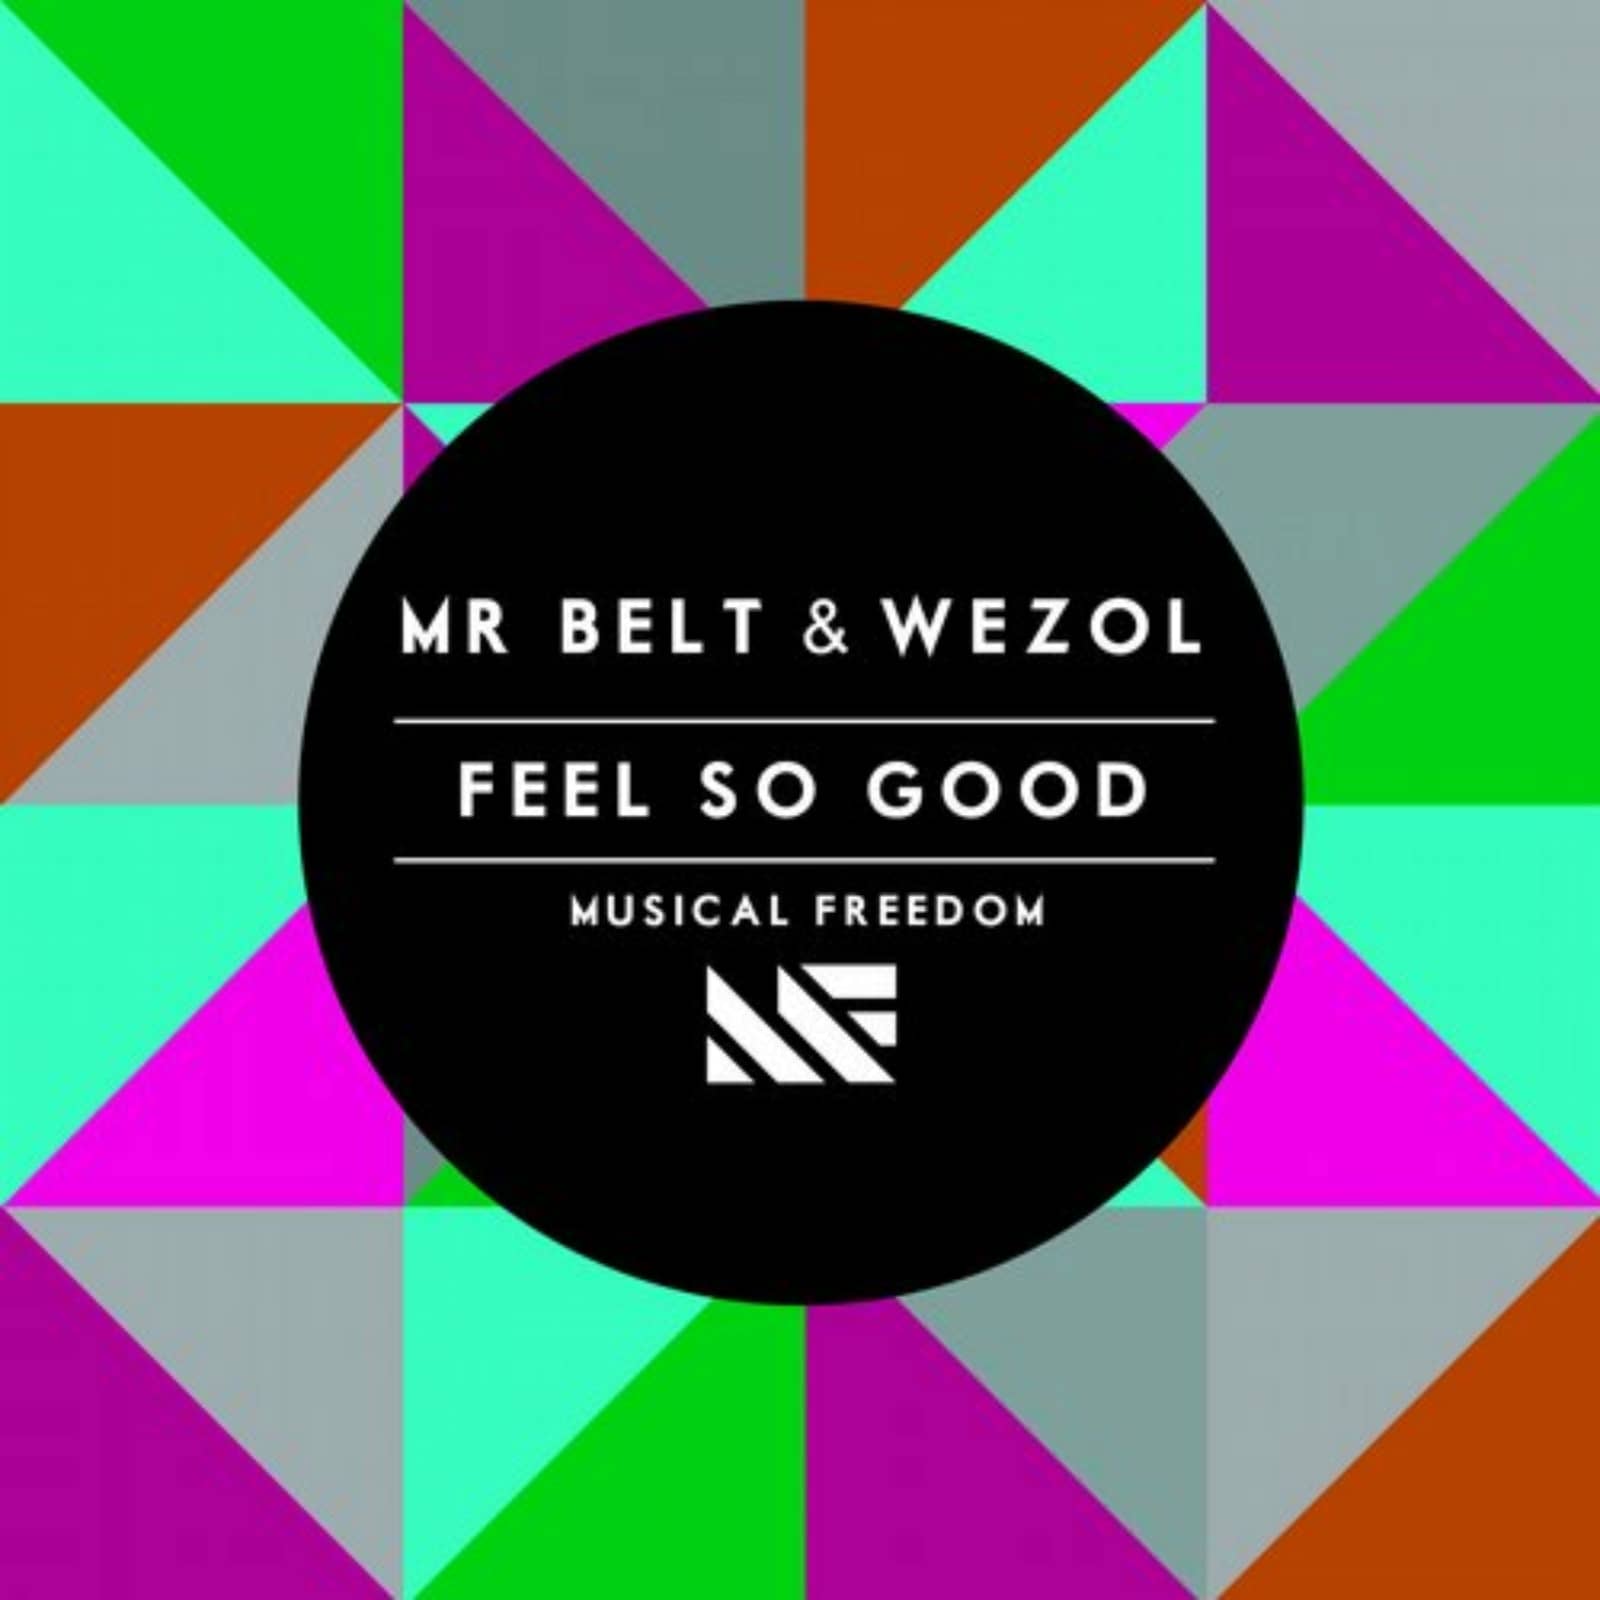 Feel время. Mr. Belt & Wezol. Feel good Music. Feel so. Mr feel good.